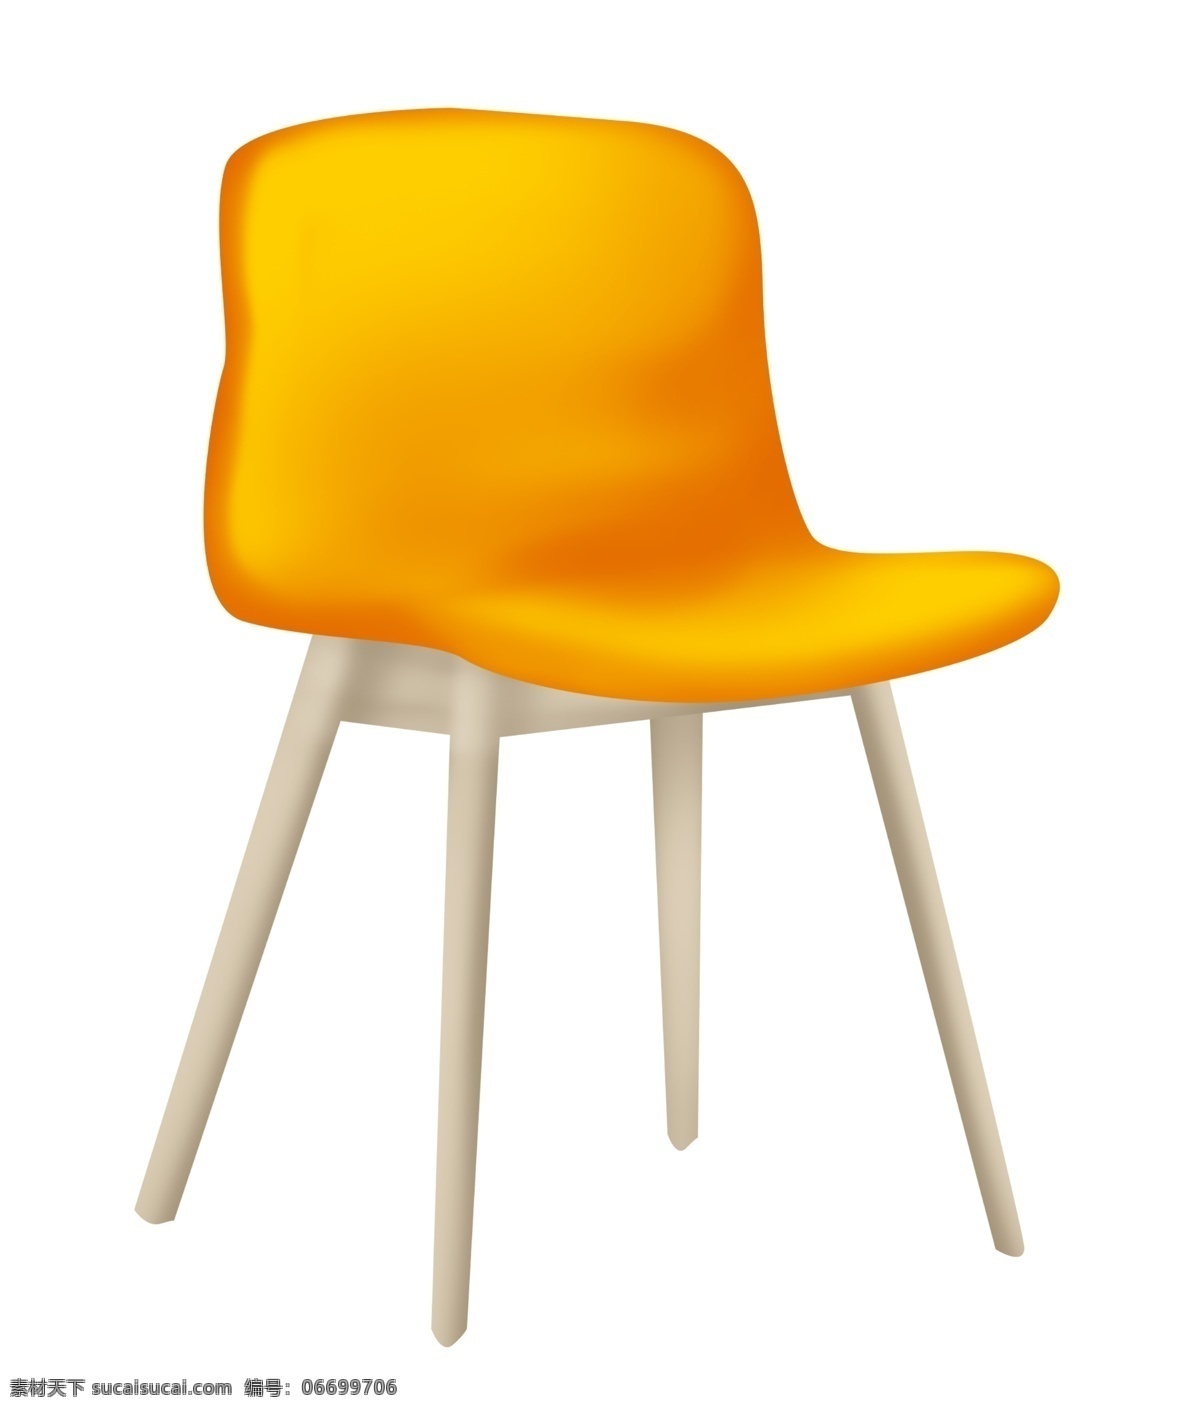 黄色 木质 椅子 插画 黄色的椅子 卡通插画 椅子插画 家具插画 椅子家具 精美椅子 实木的椅子